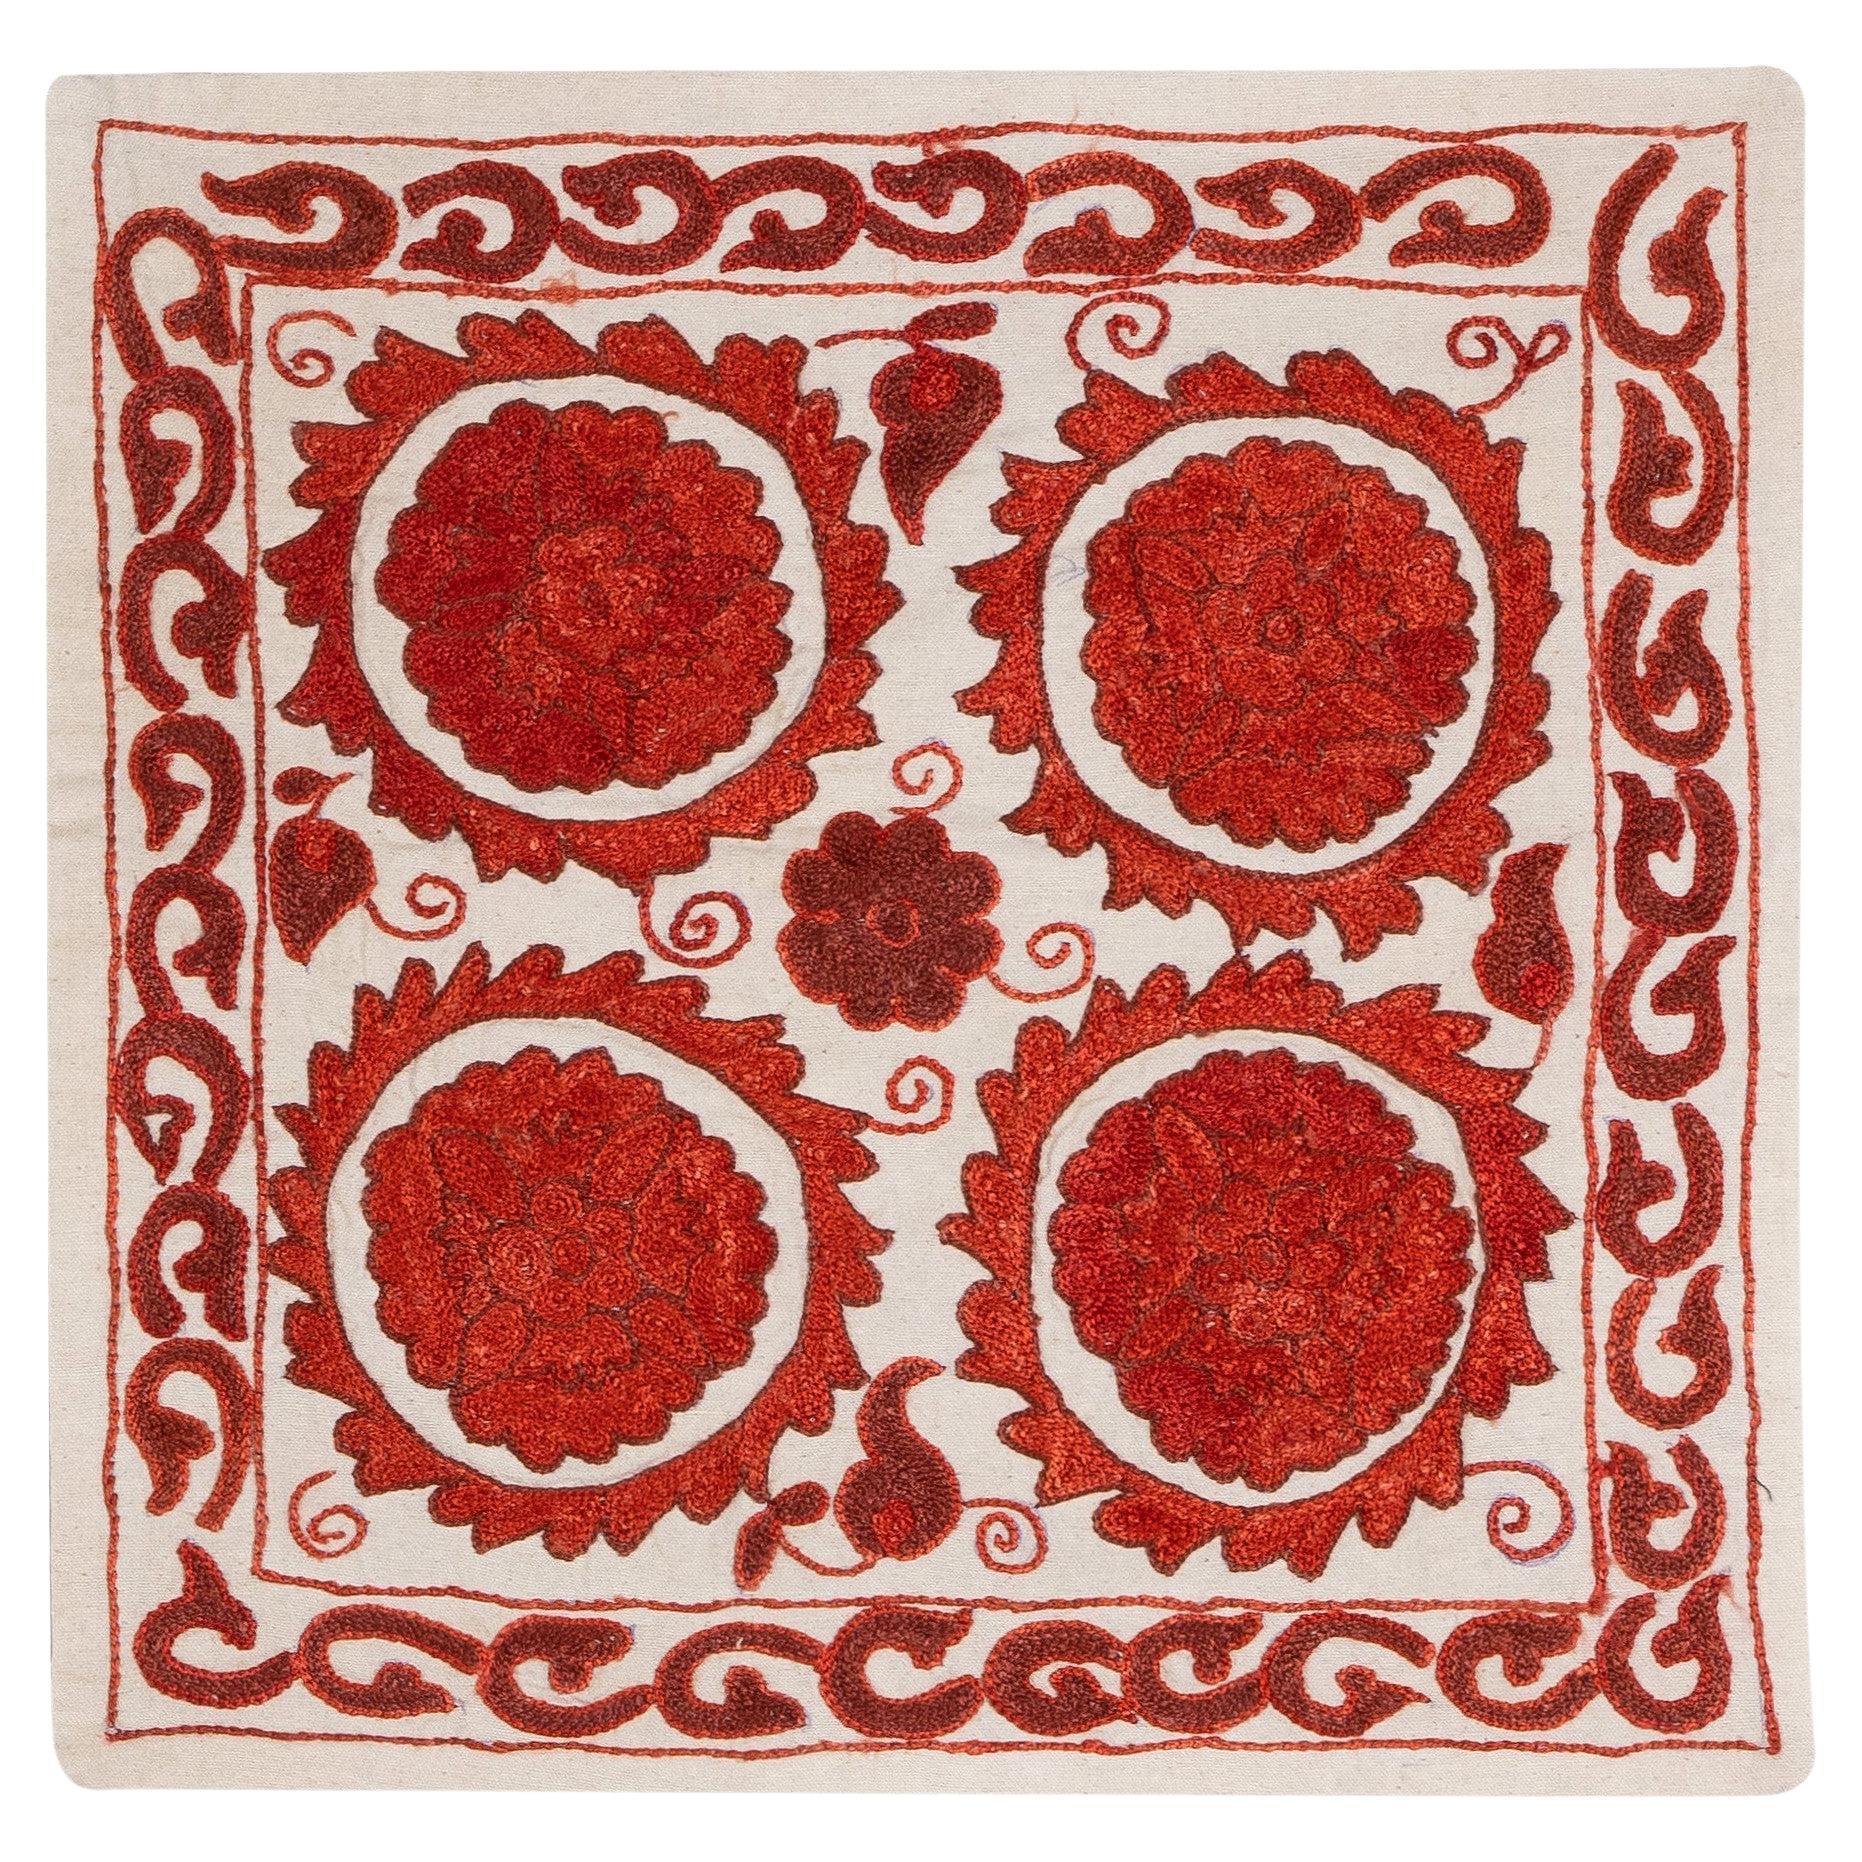 18 "x18" Housse de coussin contemporaine en tissu Suzani brodé de soie ivoire et rouge